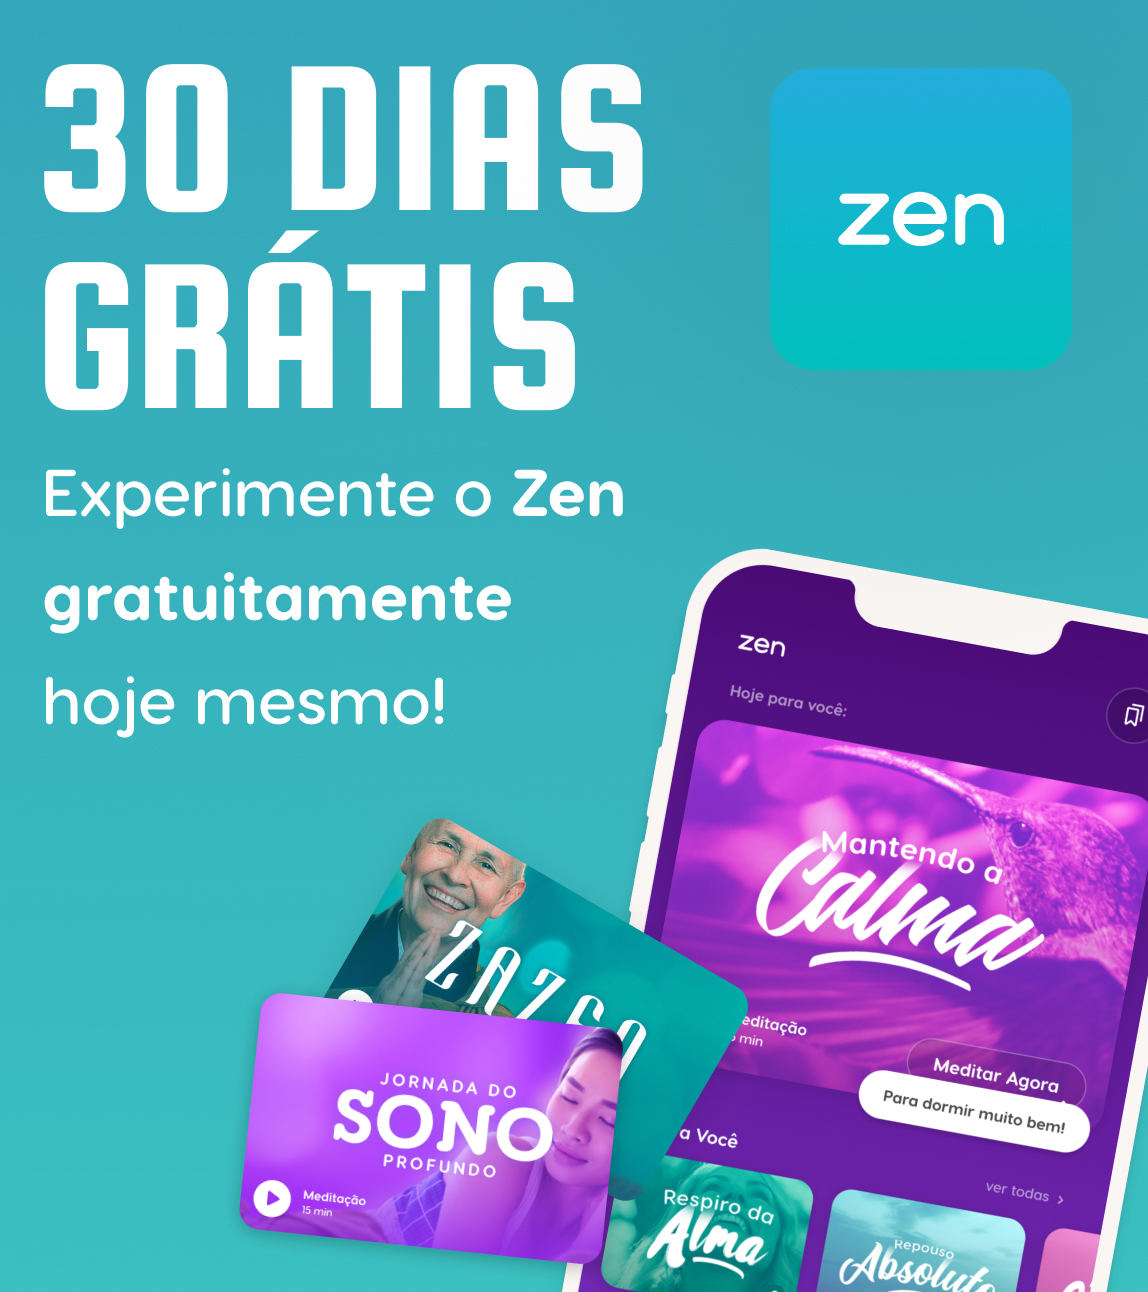 Zen App - 30 dias grátis